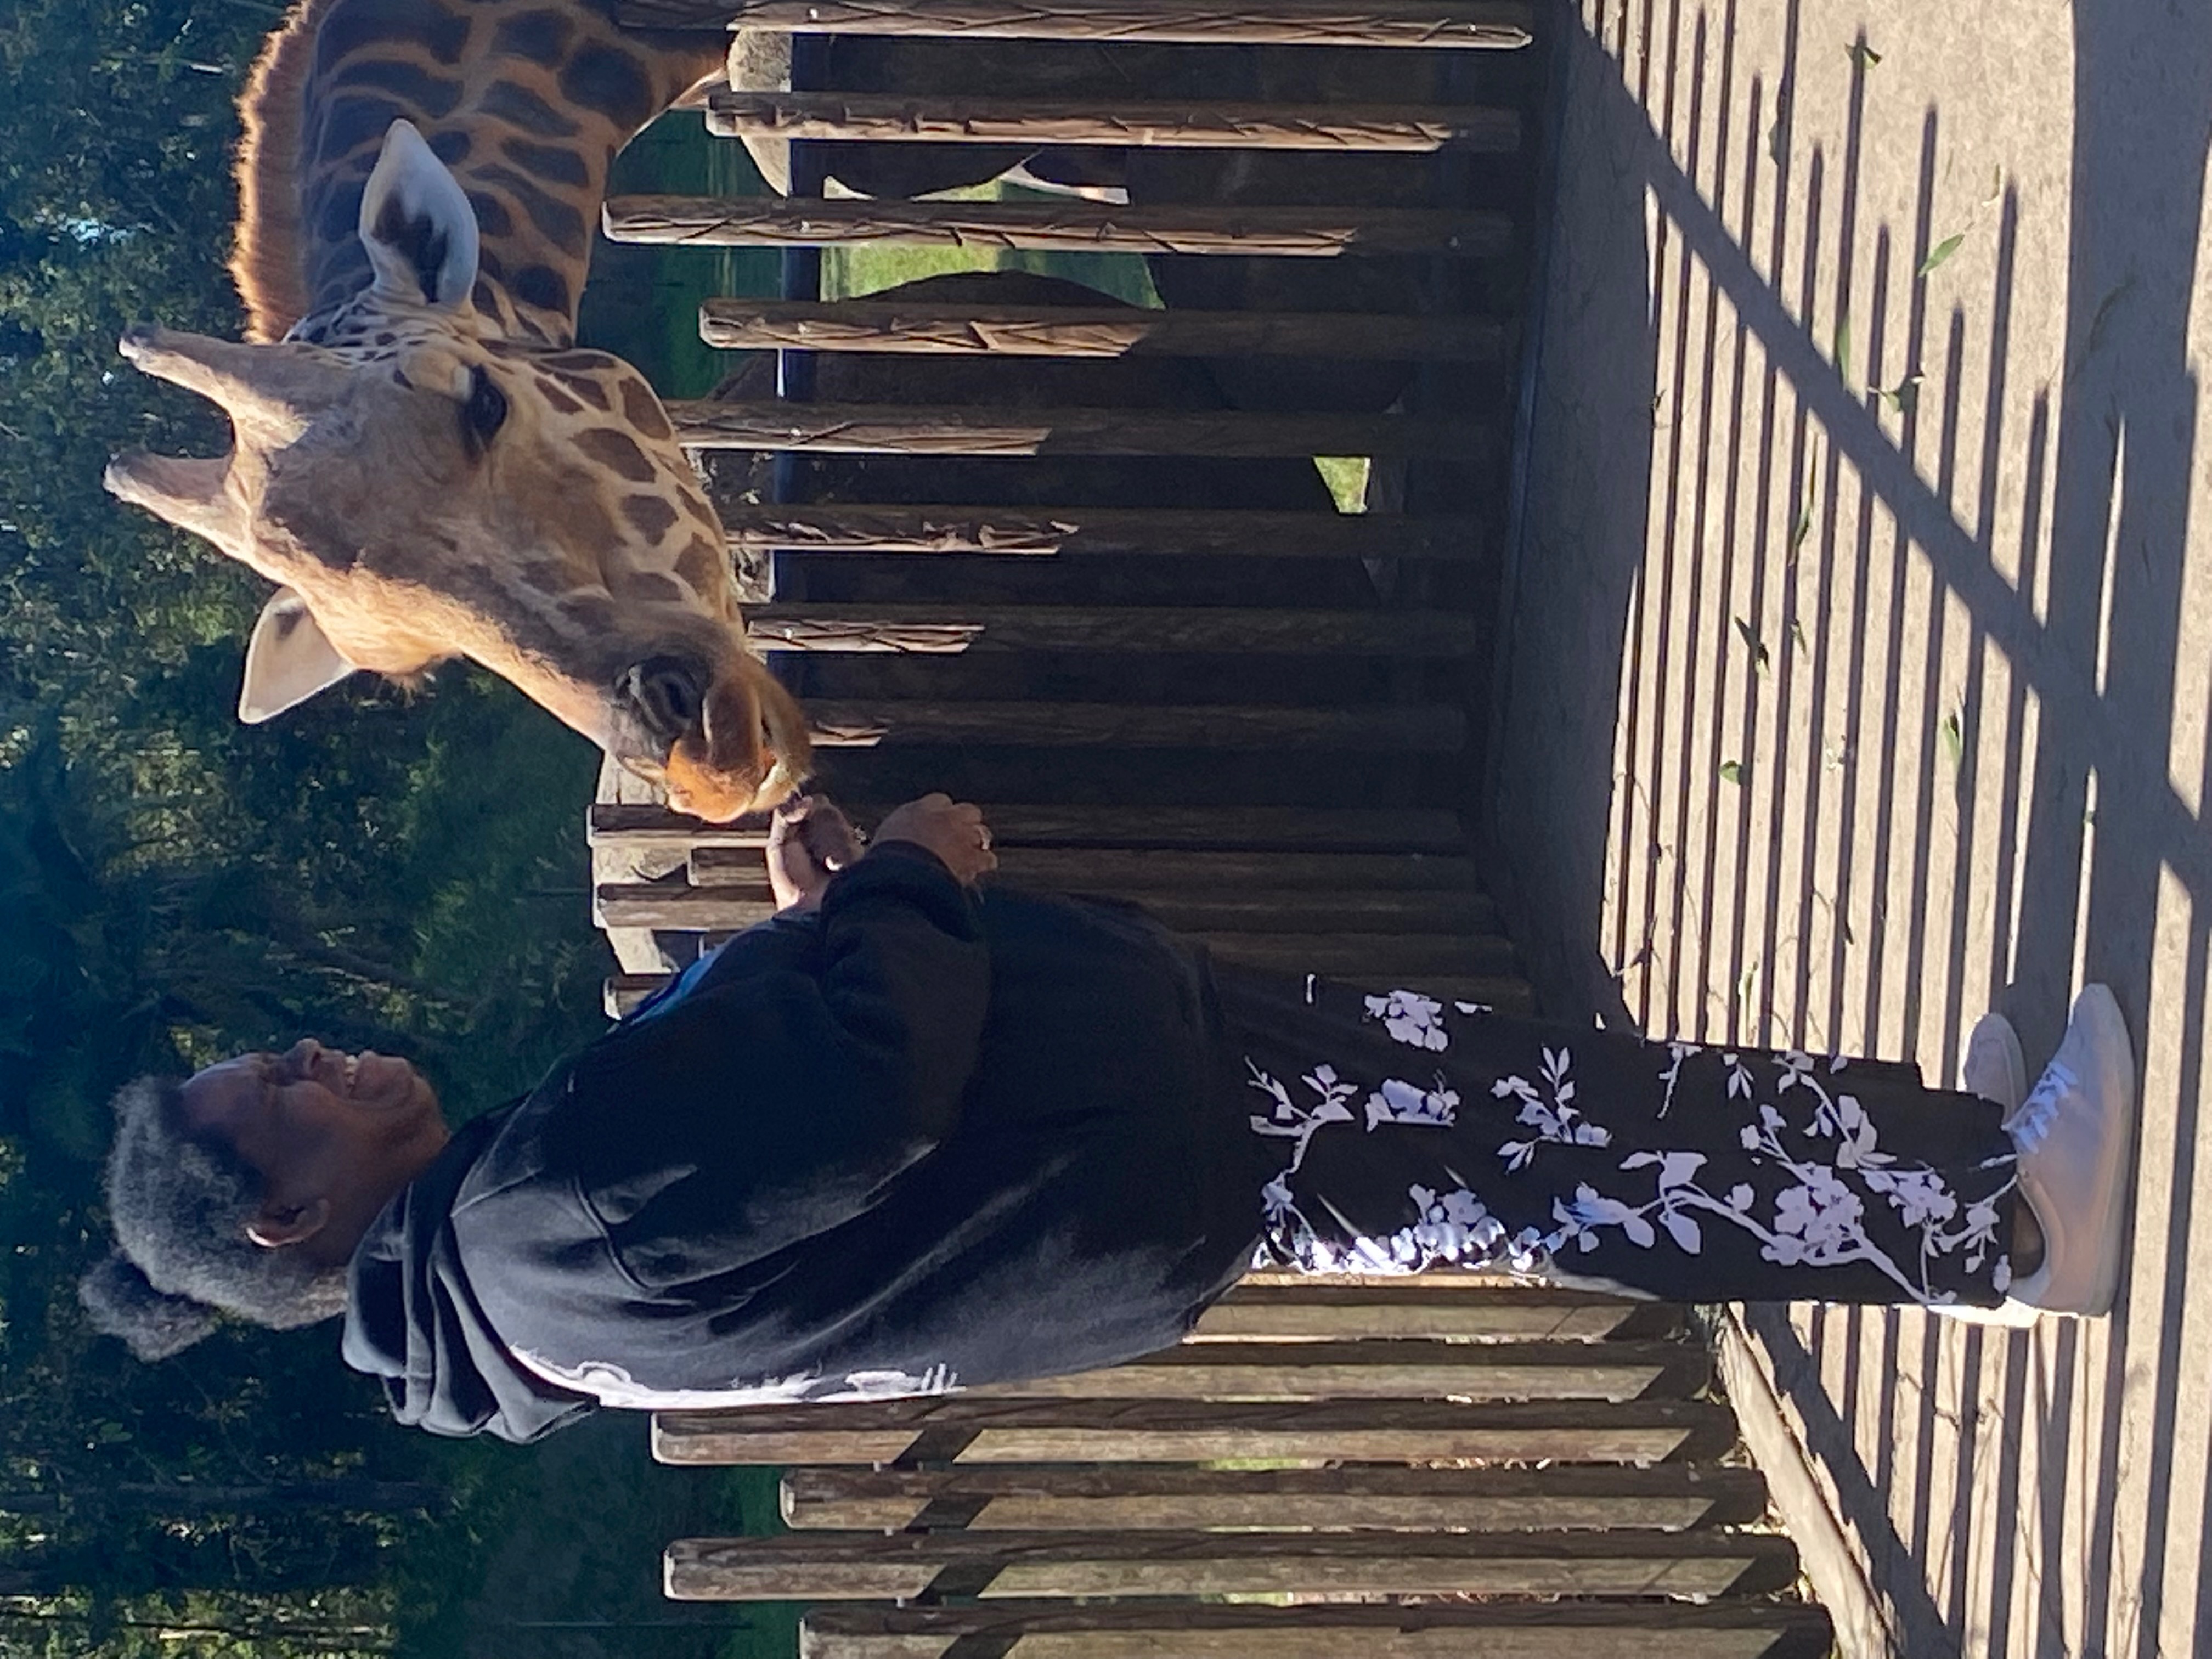 Taum feeding a giraffe